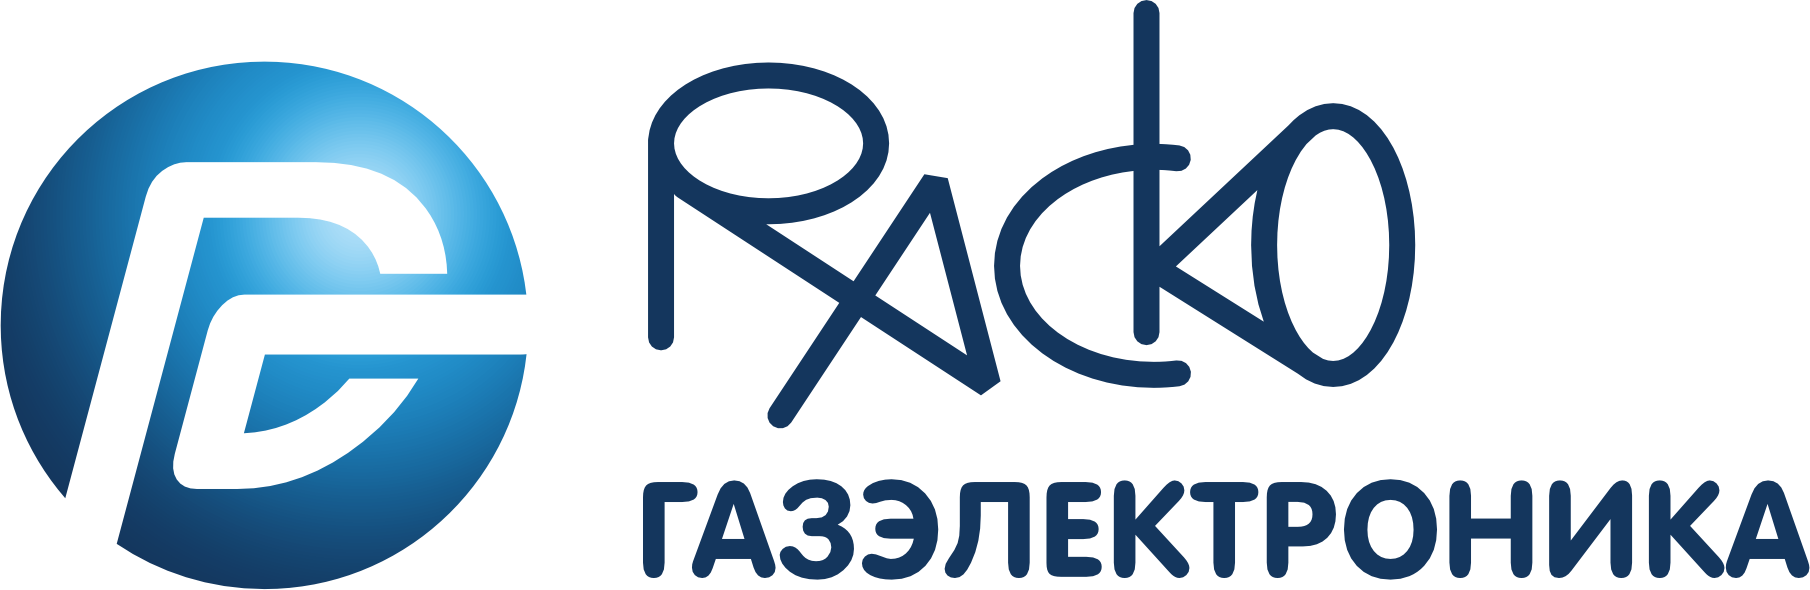 РАСКО Газэлектроника: отзывы от сотрудников и партнеров